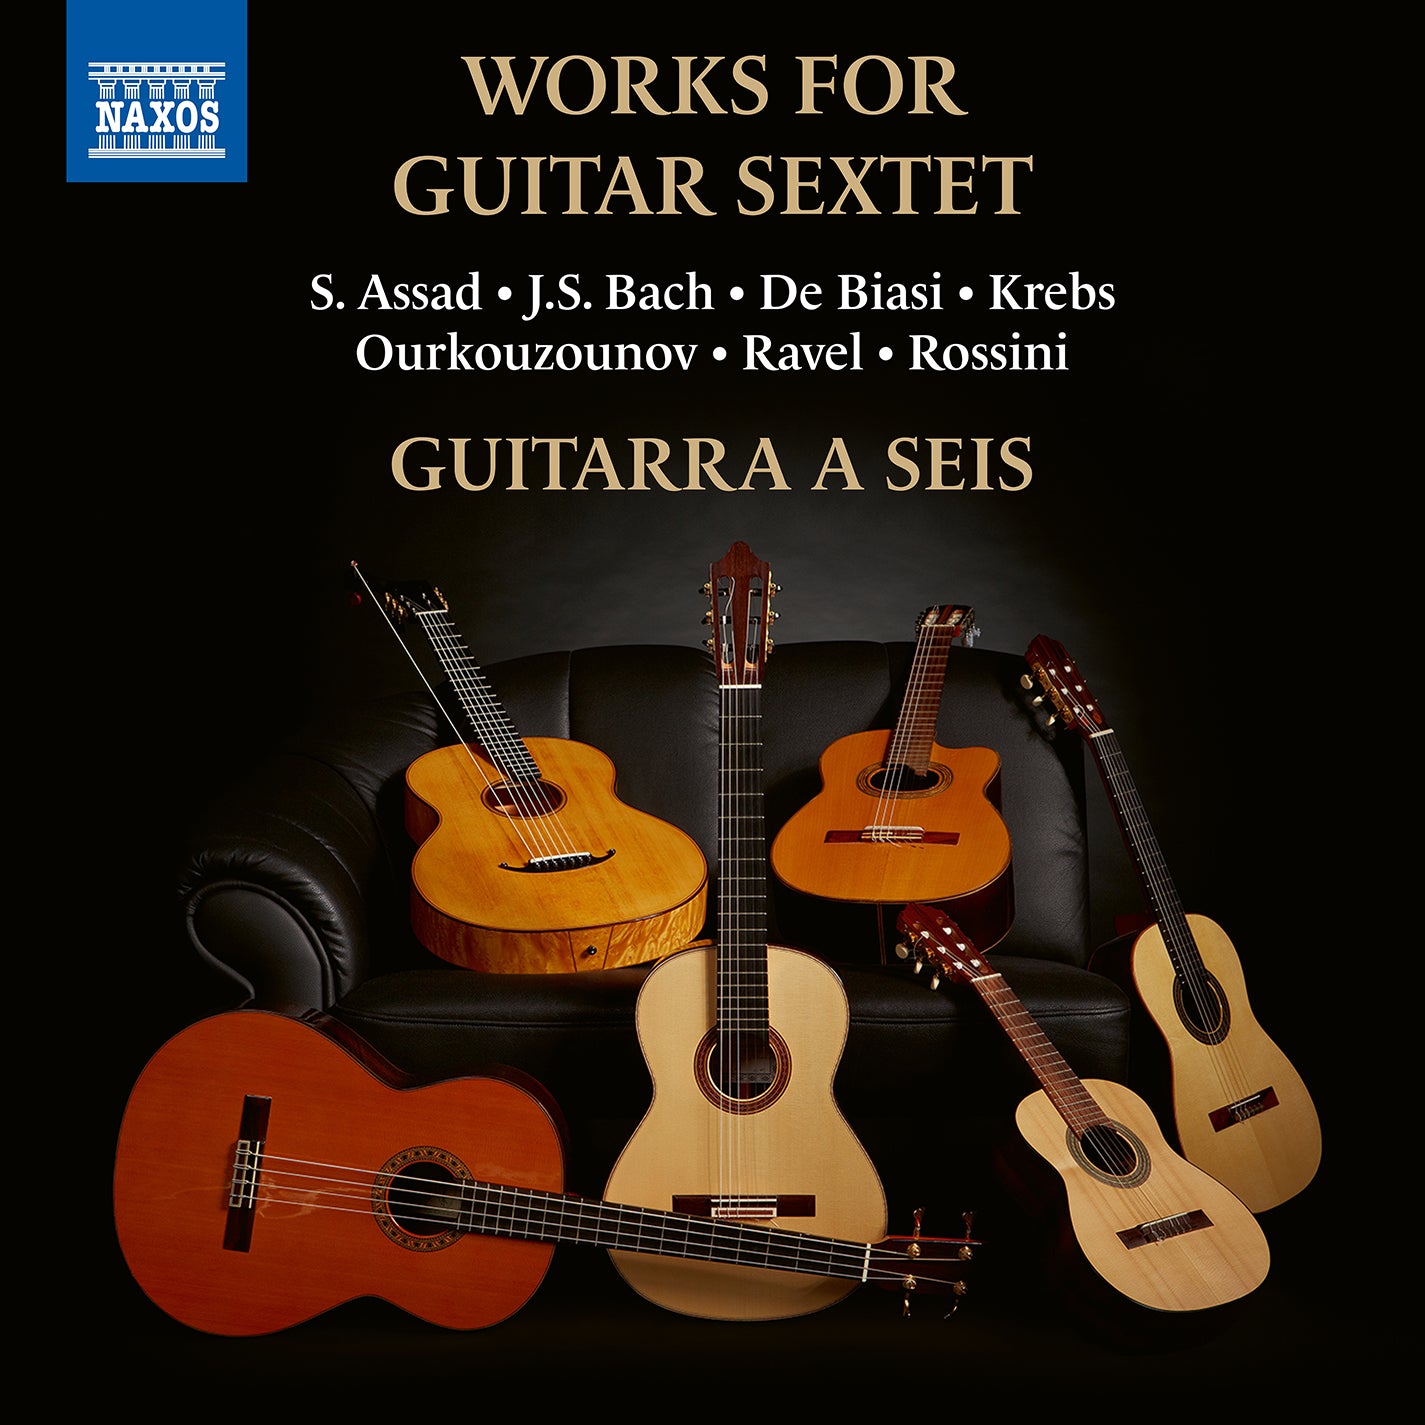 Assad, Bach, Biasi, Krebs, Ourkouzounov & Ravel: Works for Guitar Sextet / Guitarra a Seis